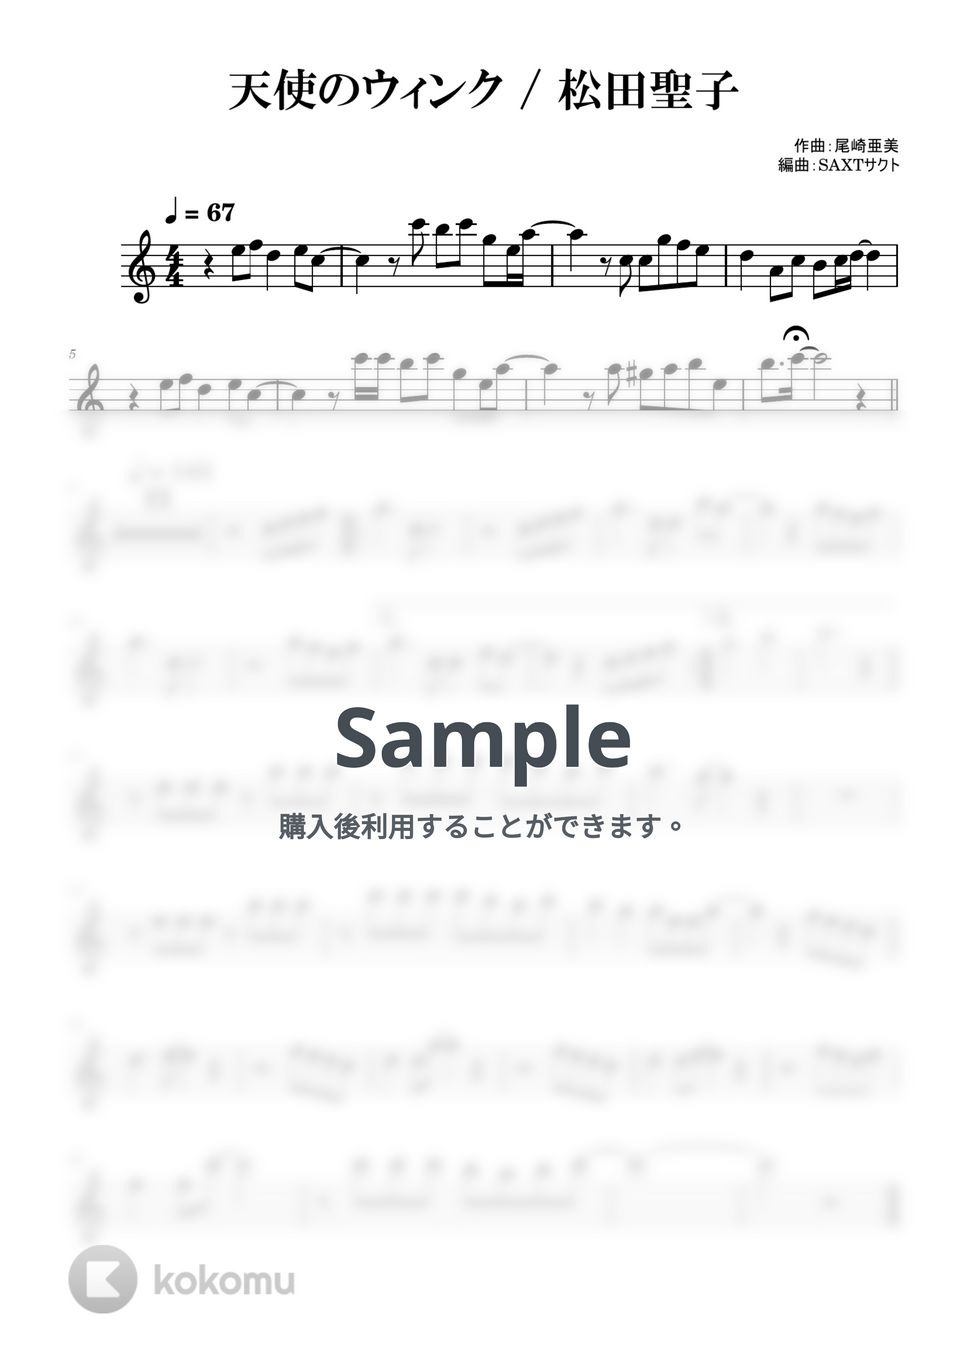 松田聖子 - 天使のウィンク (めちゃラク譜) by SAXT